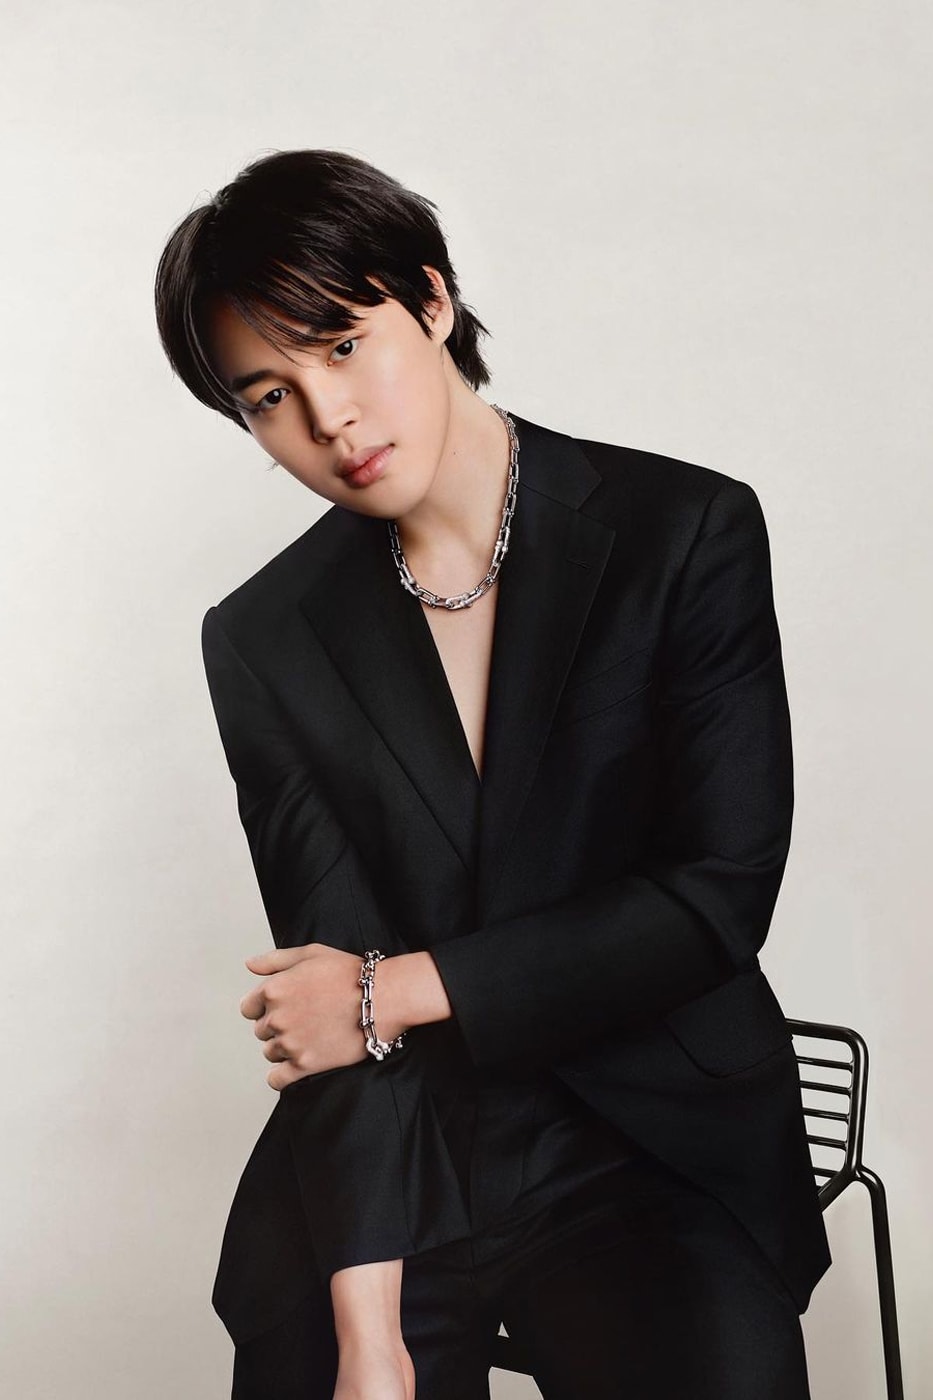 Tiffany & Co. Reveals BTS Jimin's First Campaign zoe kravitz gal gadot wonderwoman k-pop star ambassador jewelry diamonds korea bts army rm j-hope suga v jin jung kook